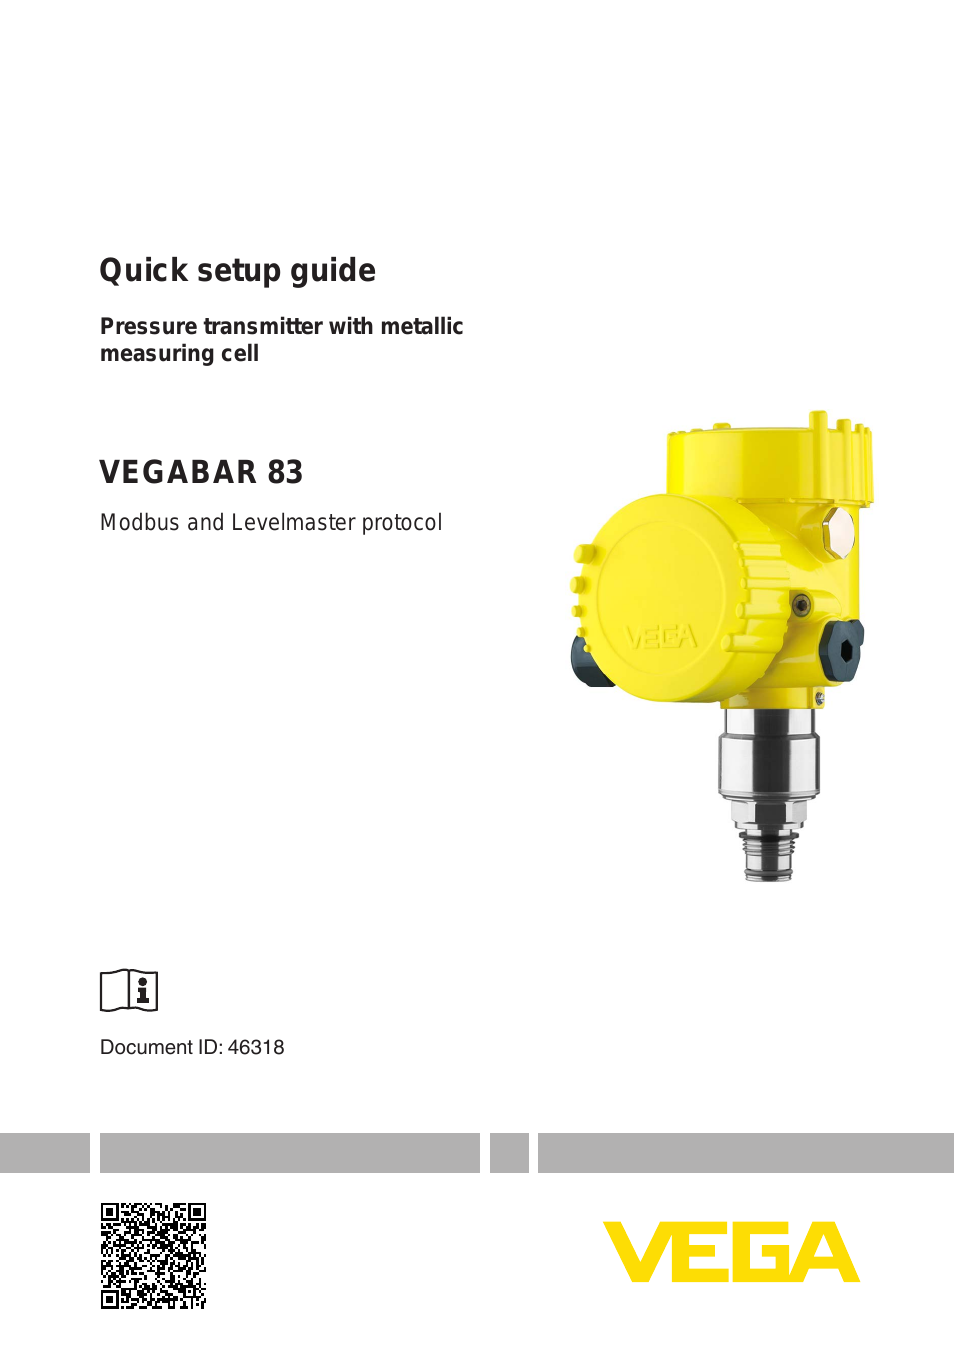 VEGABAR 83 Modbus and Levelmaster protocol - Quick setup guide